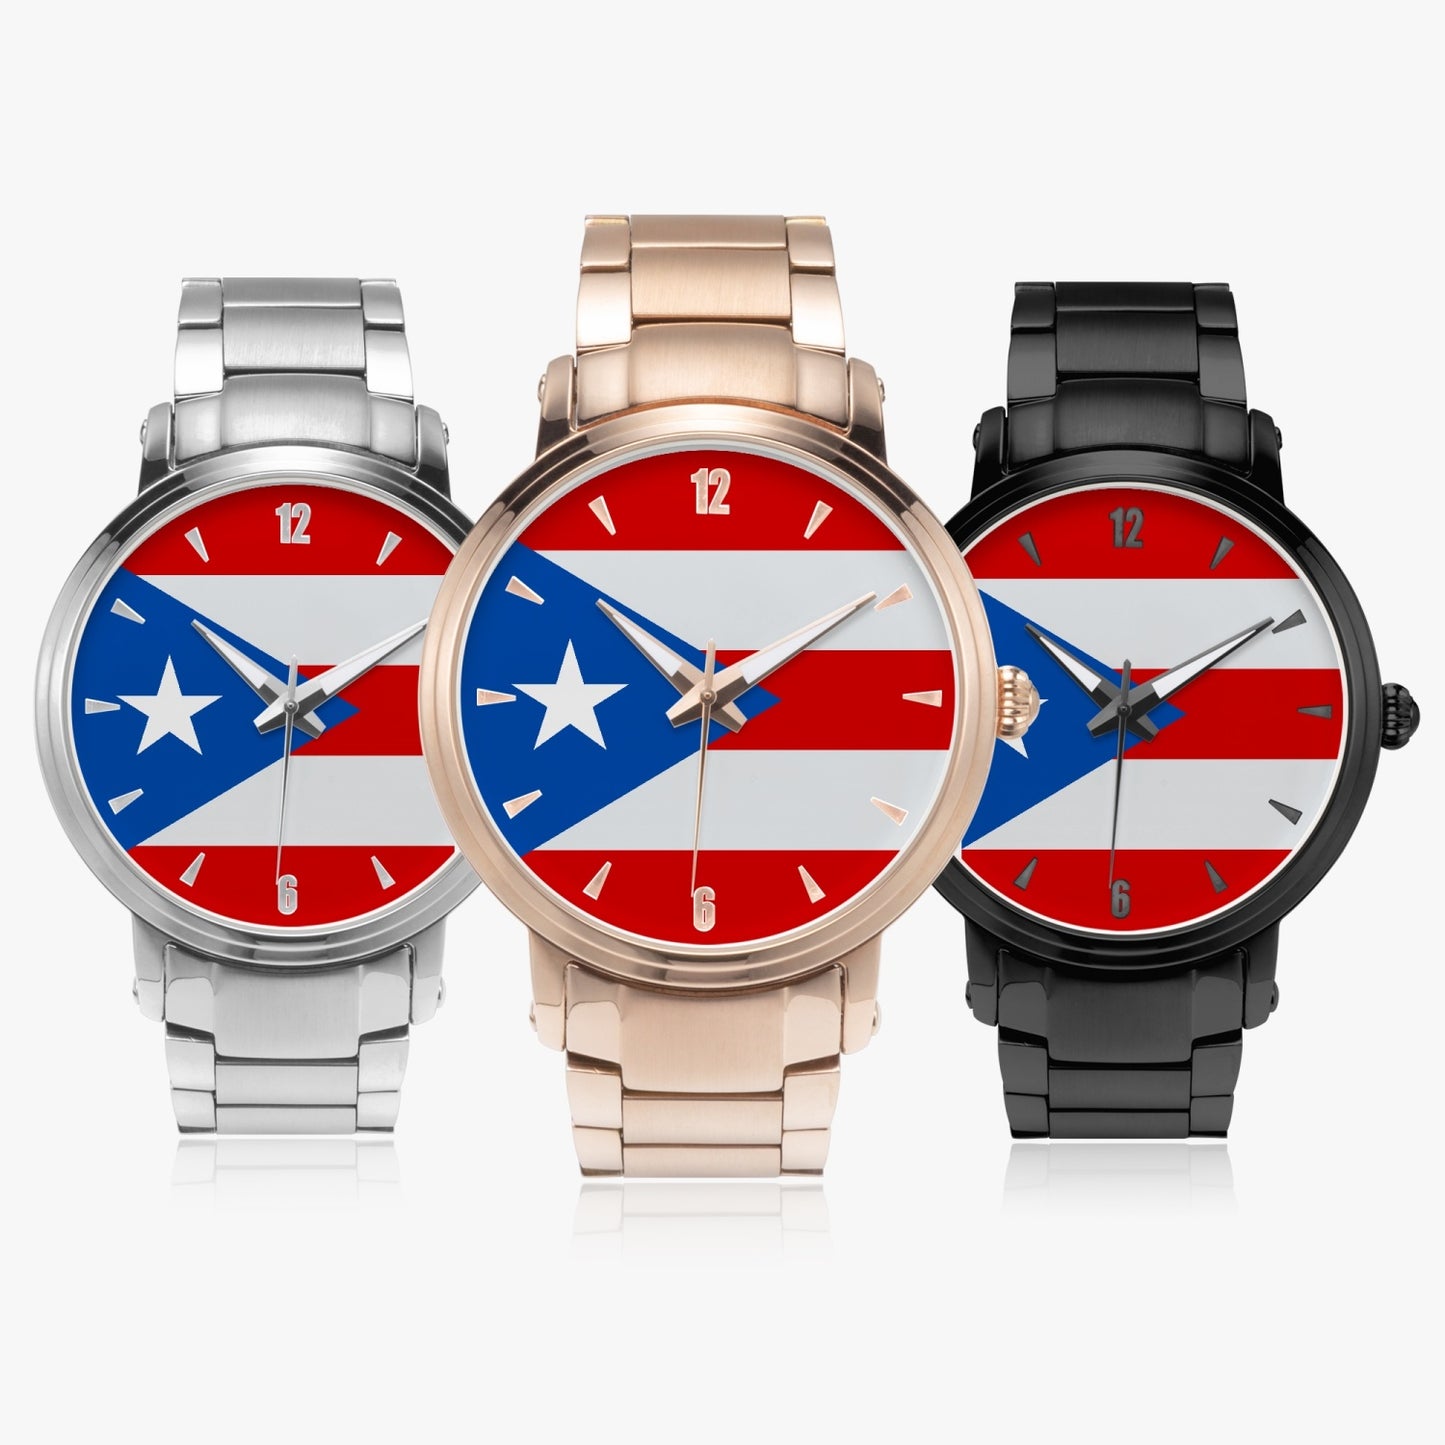 1Tweezy Puerto Rico Fine Watch